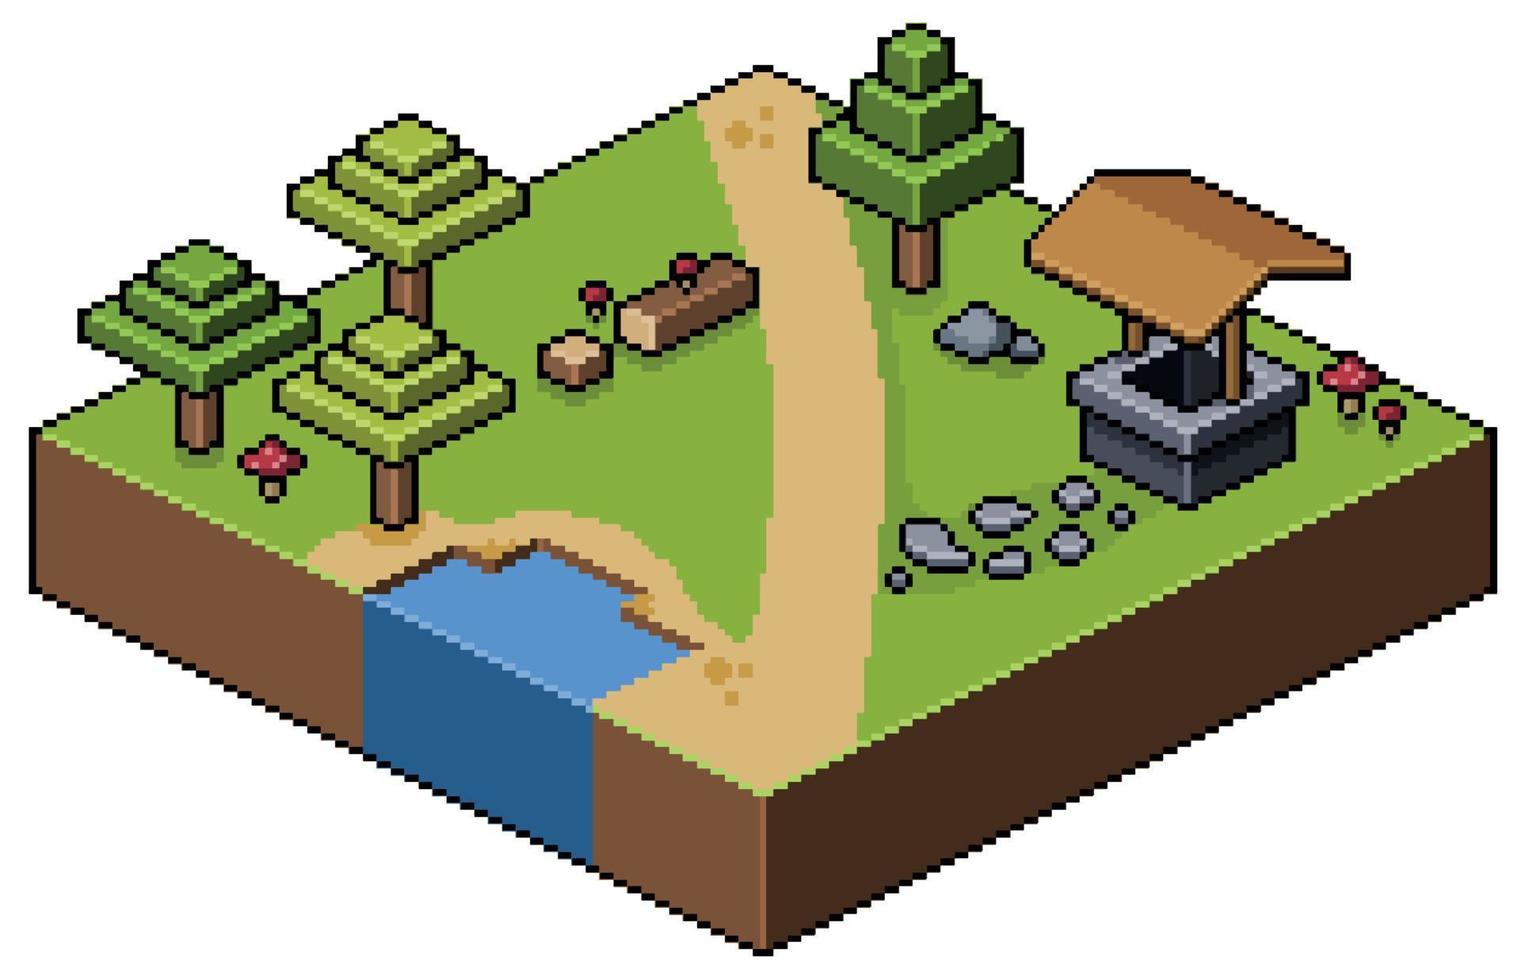 bosque de paisaje isométrico de pixel art con árboles, carretera, escenario de juego de 8 bits de pozo de agua vector